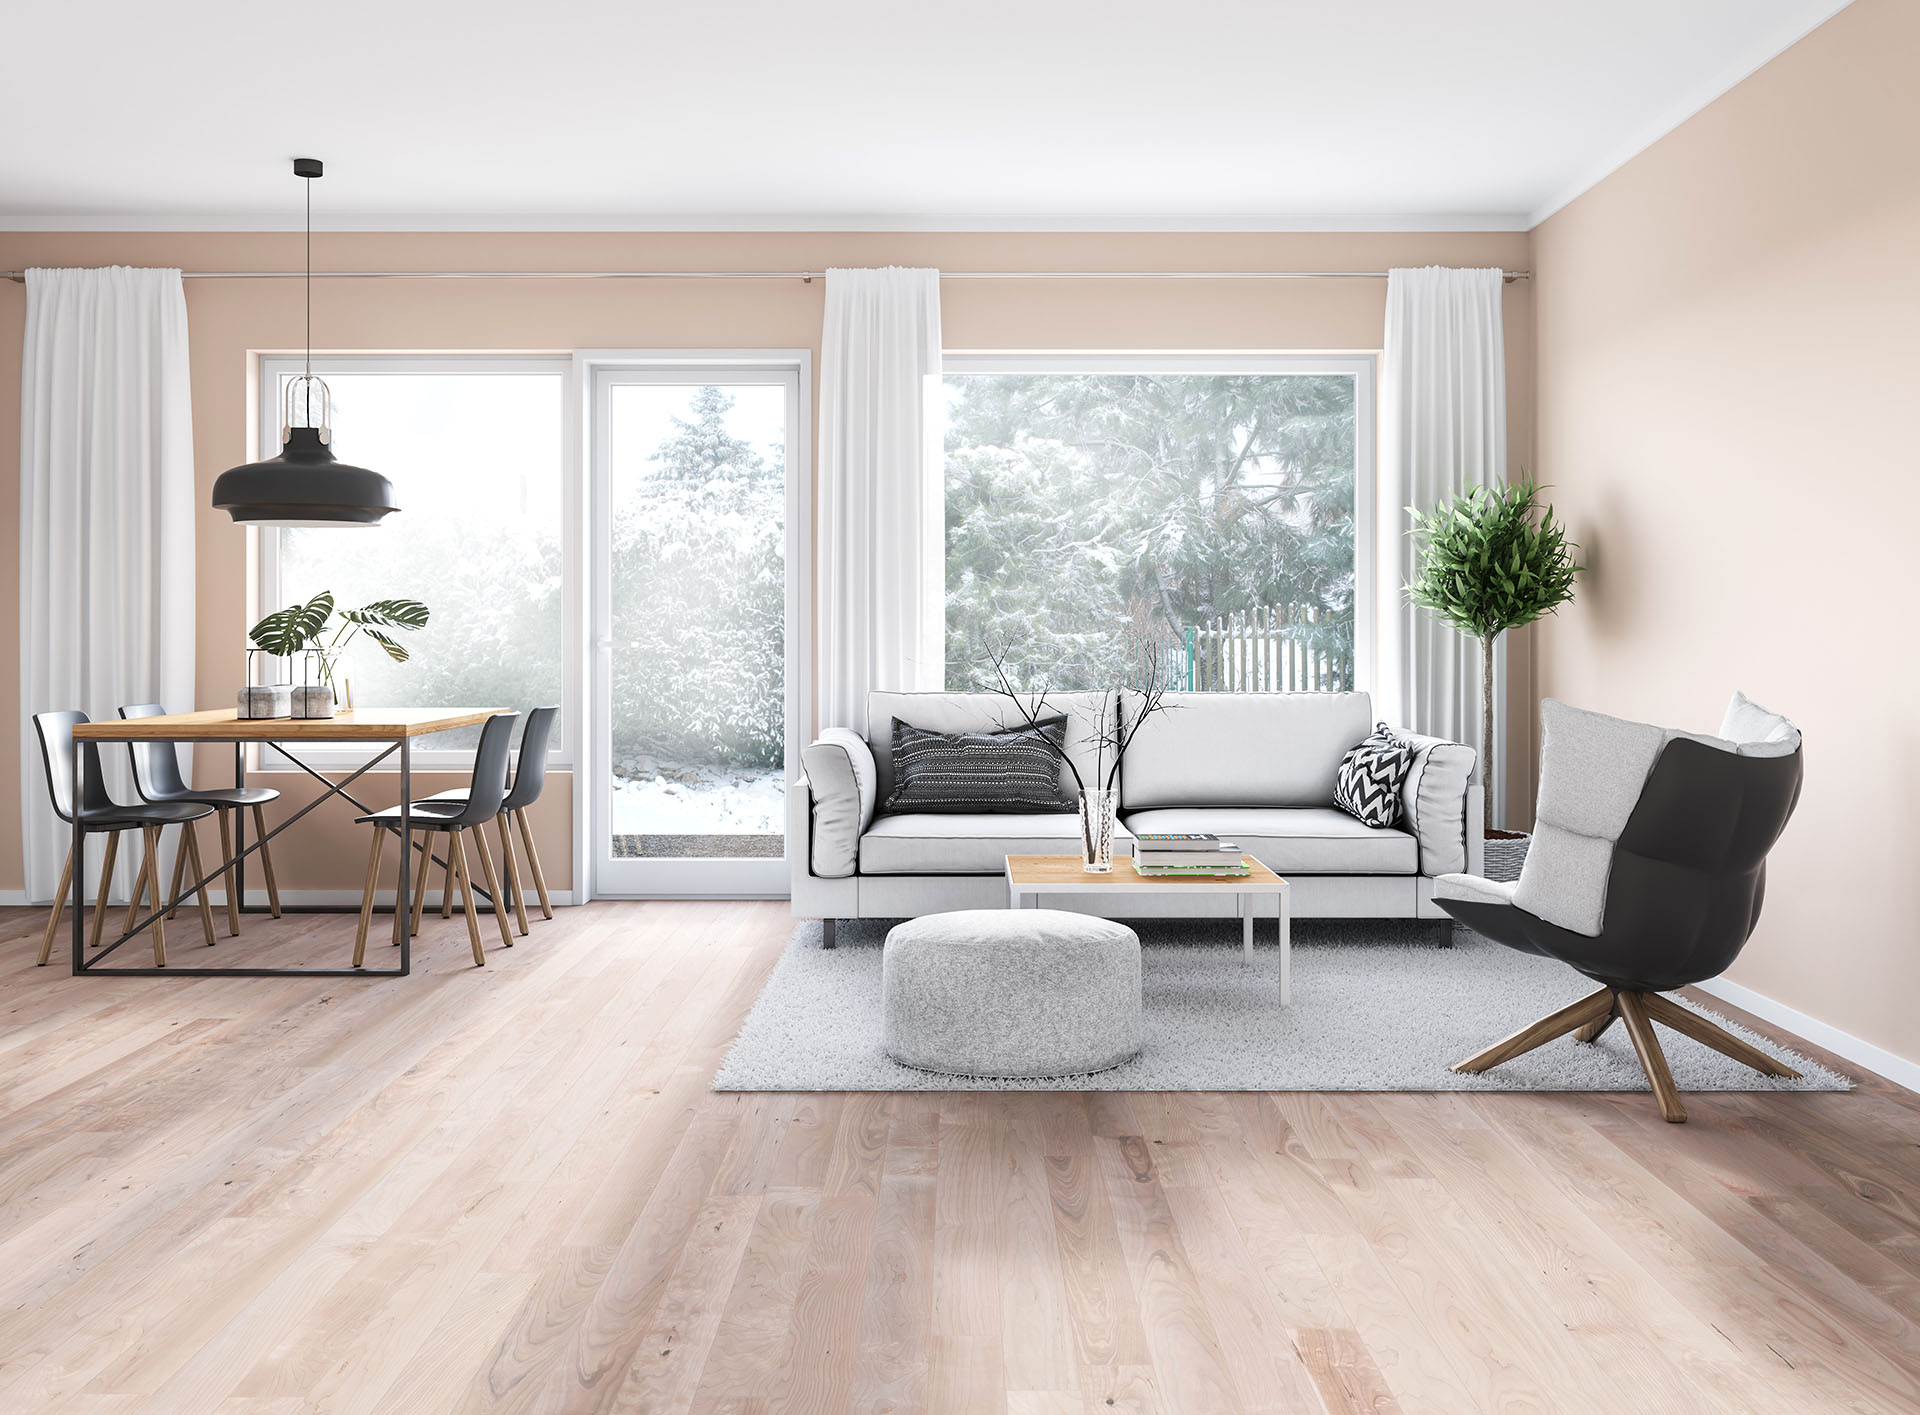 Modern, minimalistisches Wohnzimmer mit warmen Farben 